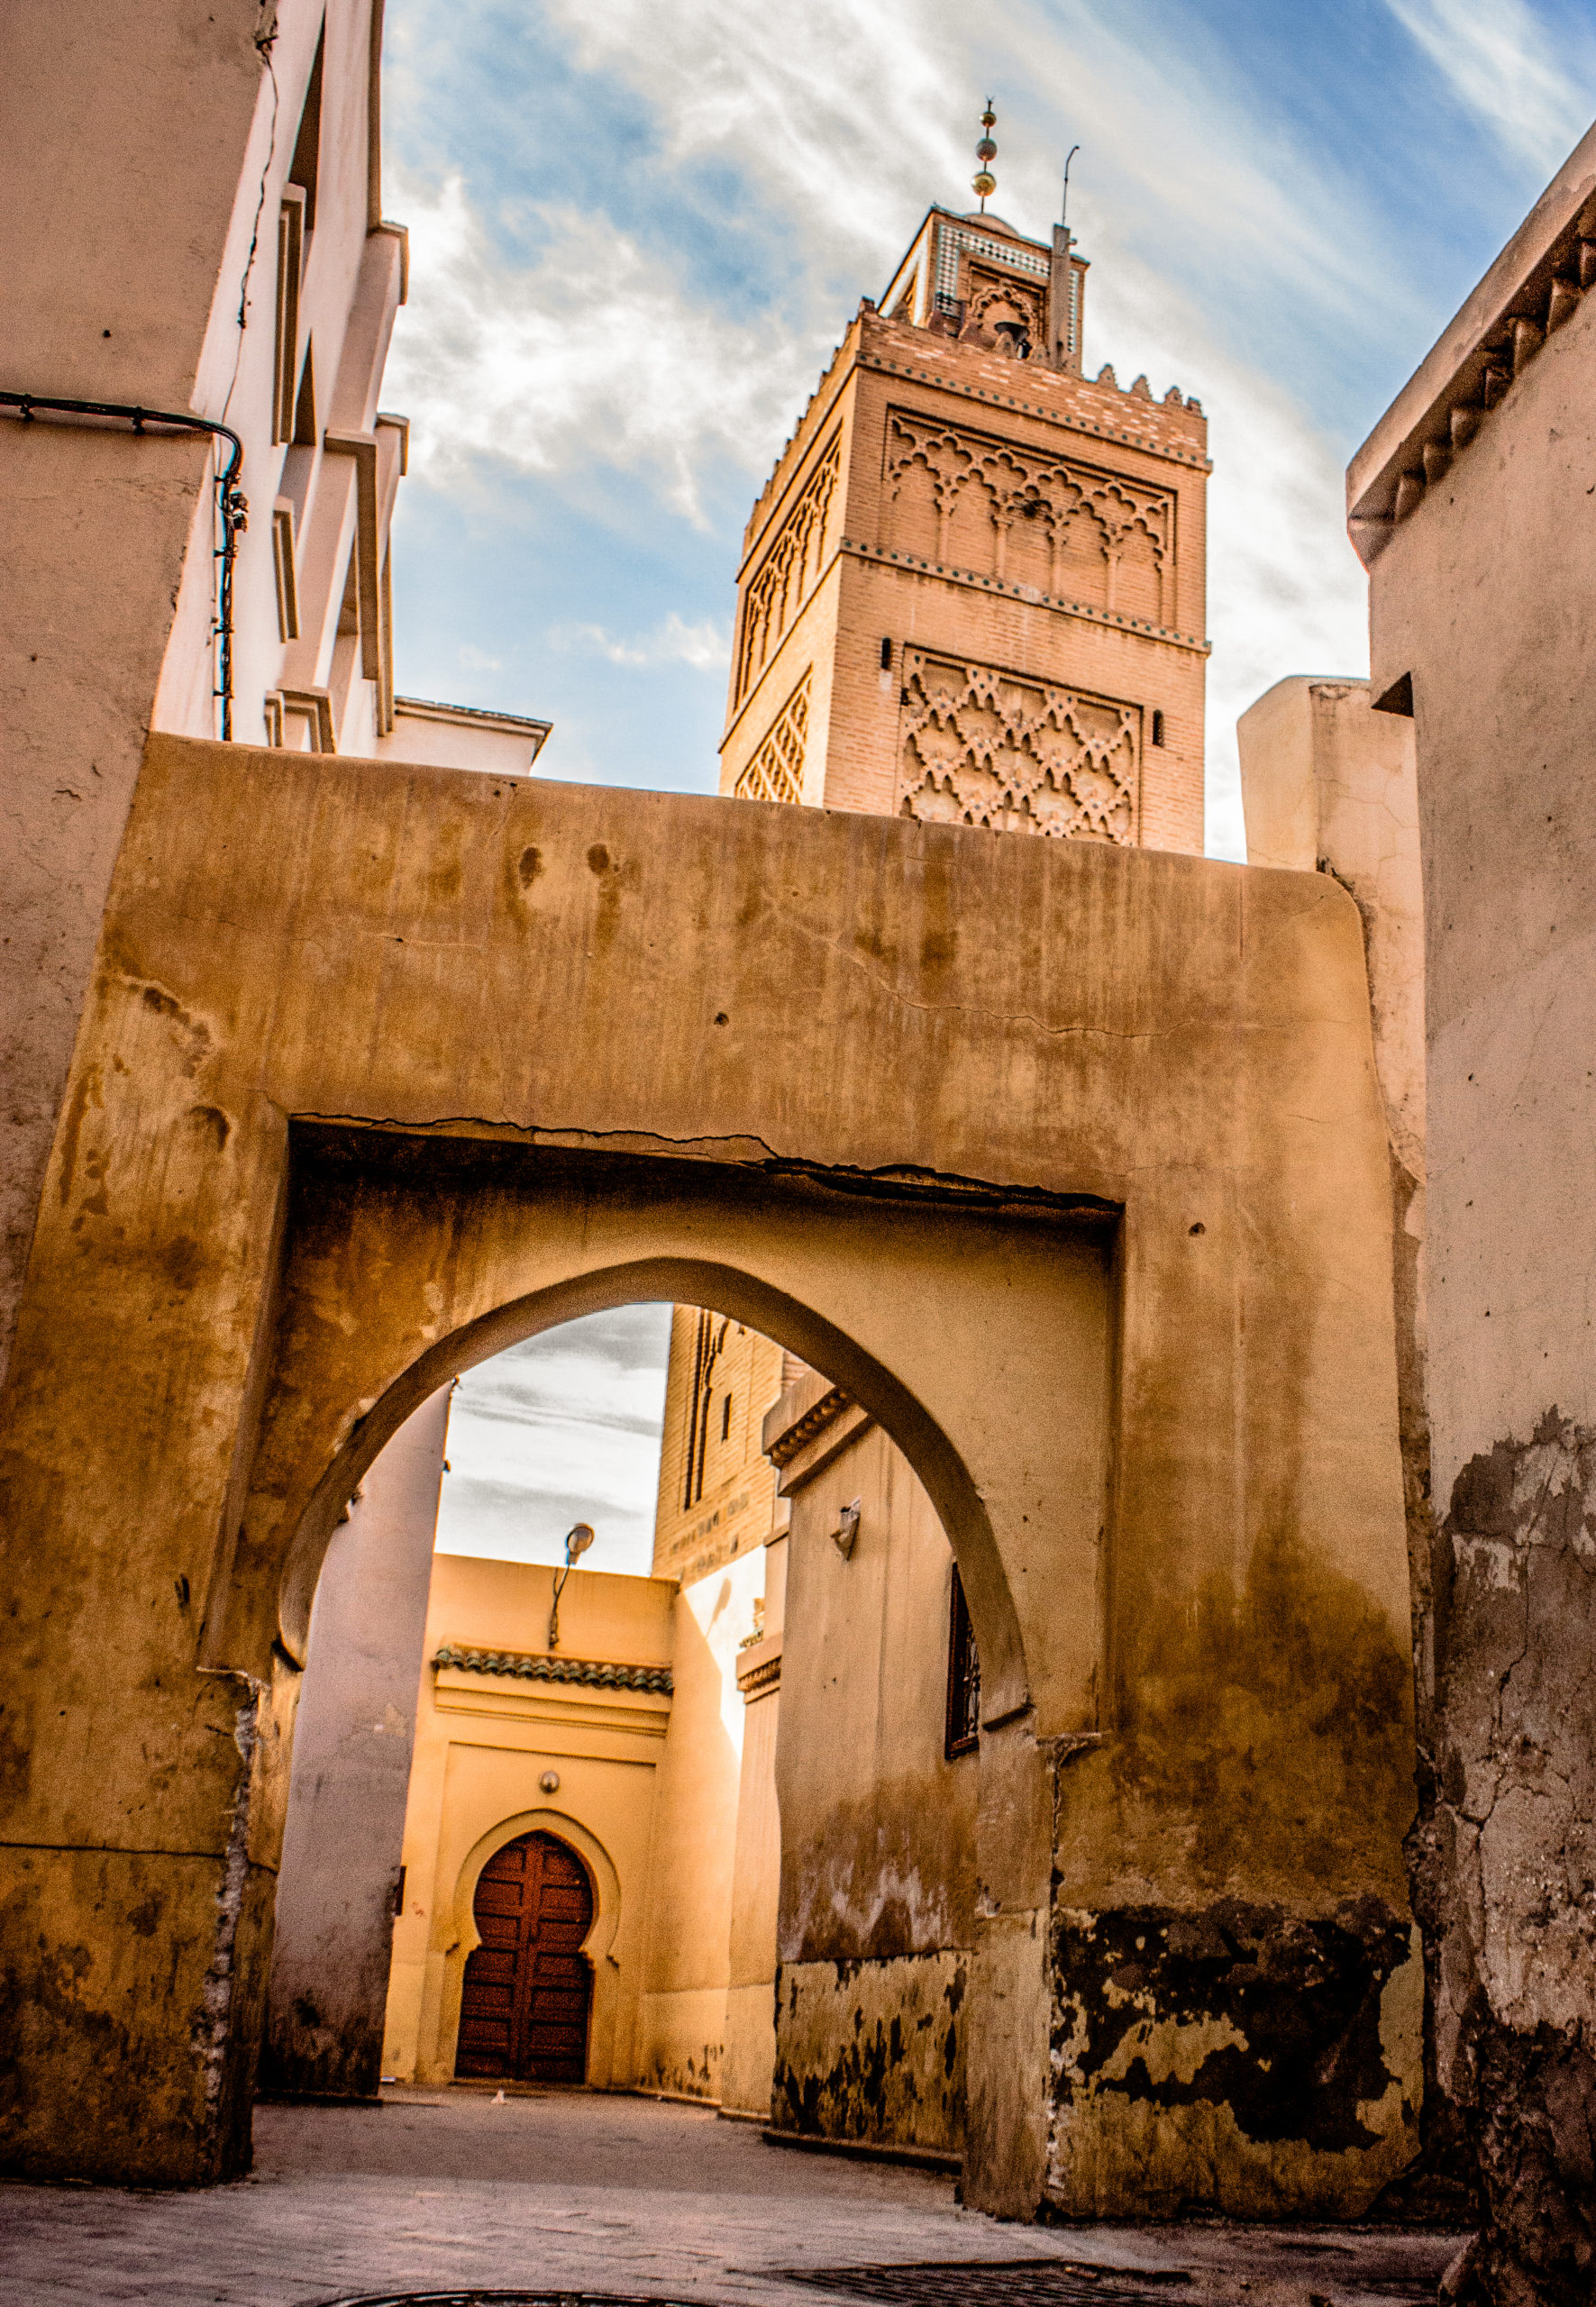 Mosquee oujda, mosquee maroc, maroc islam, maroc religion, religion maroc